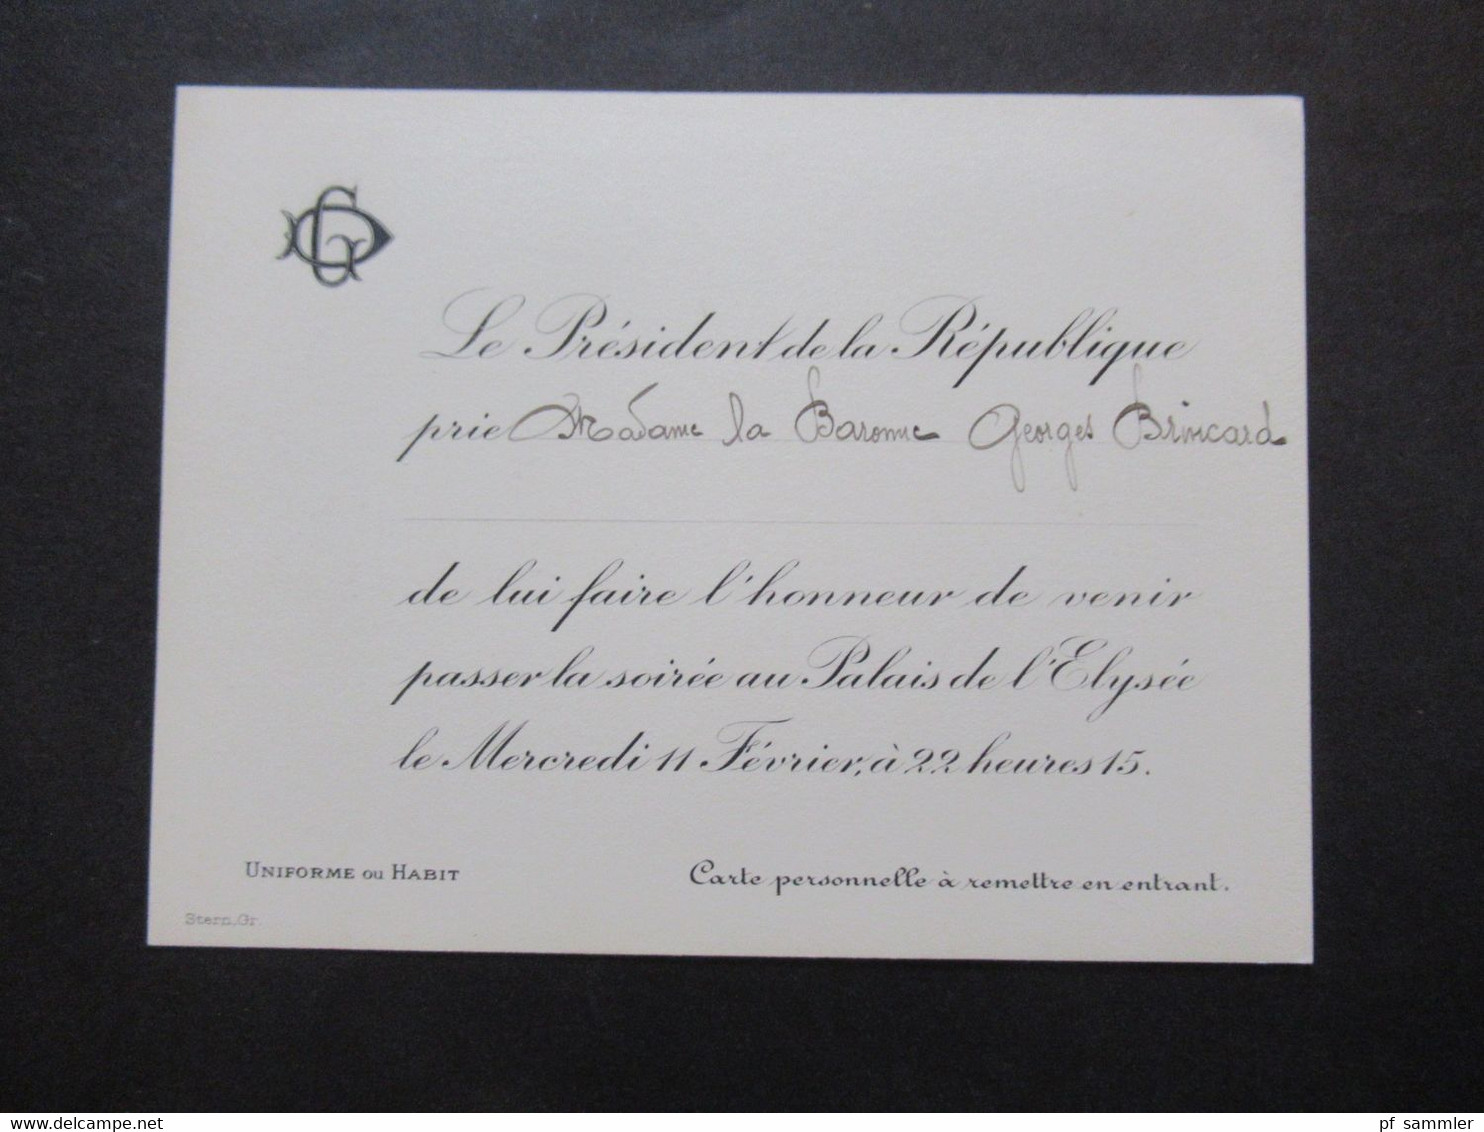 Frankreich 1920er Jahre 2x Originale Einladungskarte Von Gaston Doumergue Le President De La Republique Zur Soirée - Tickets D'entrée